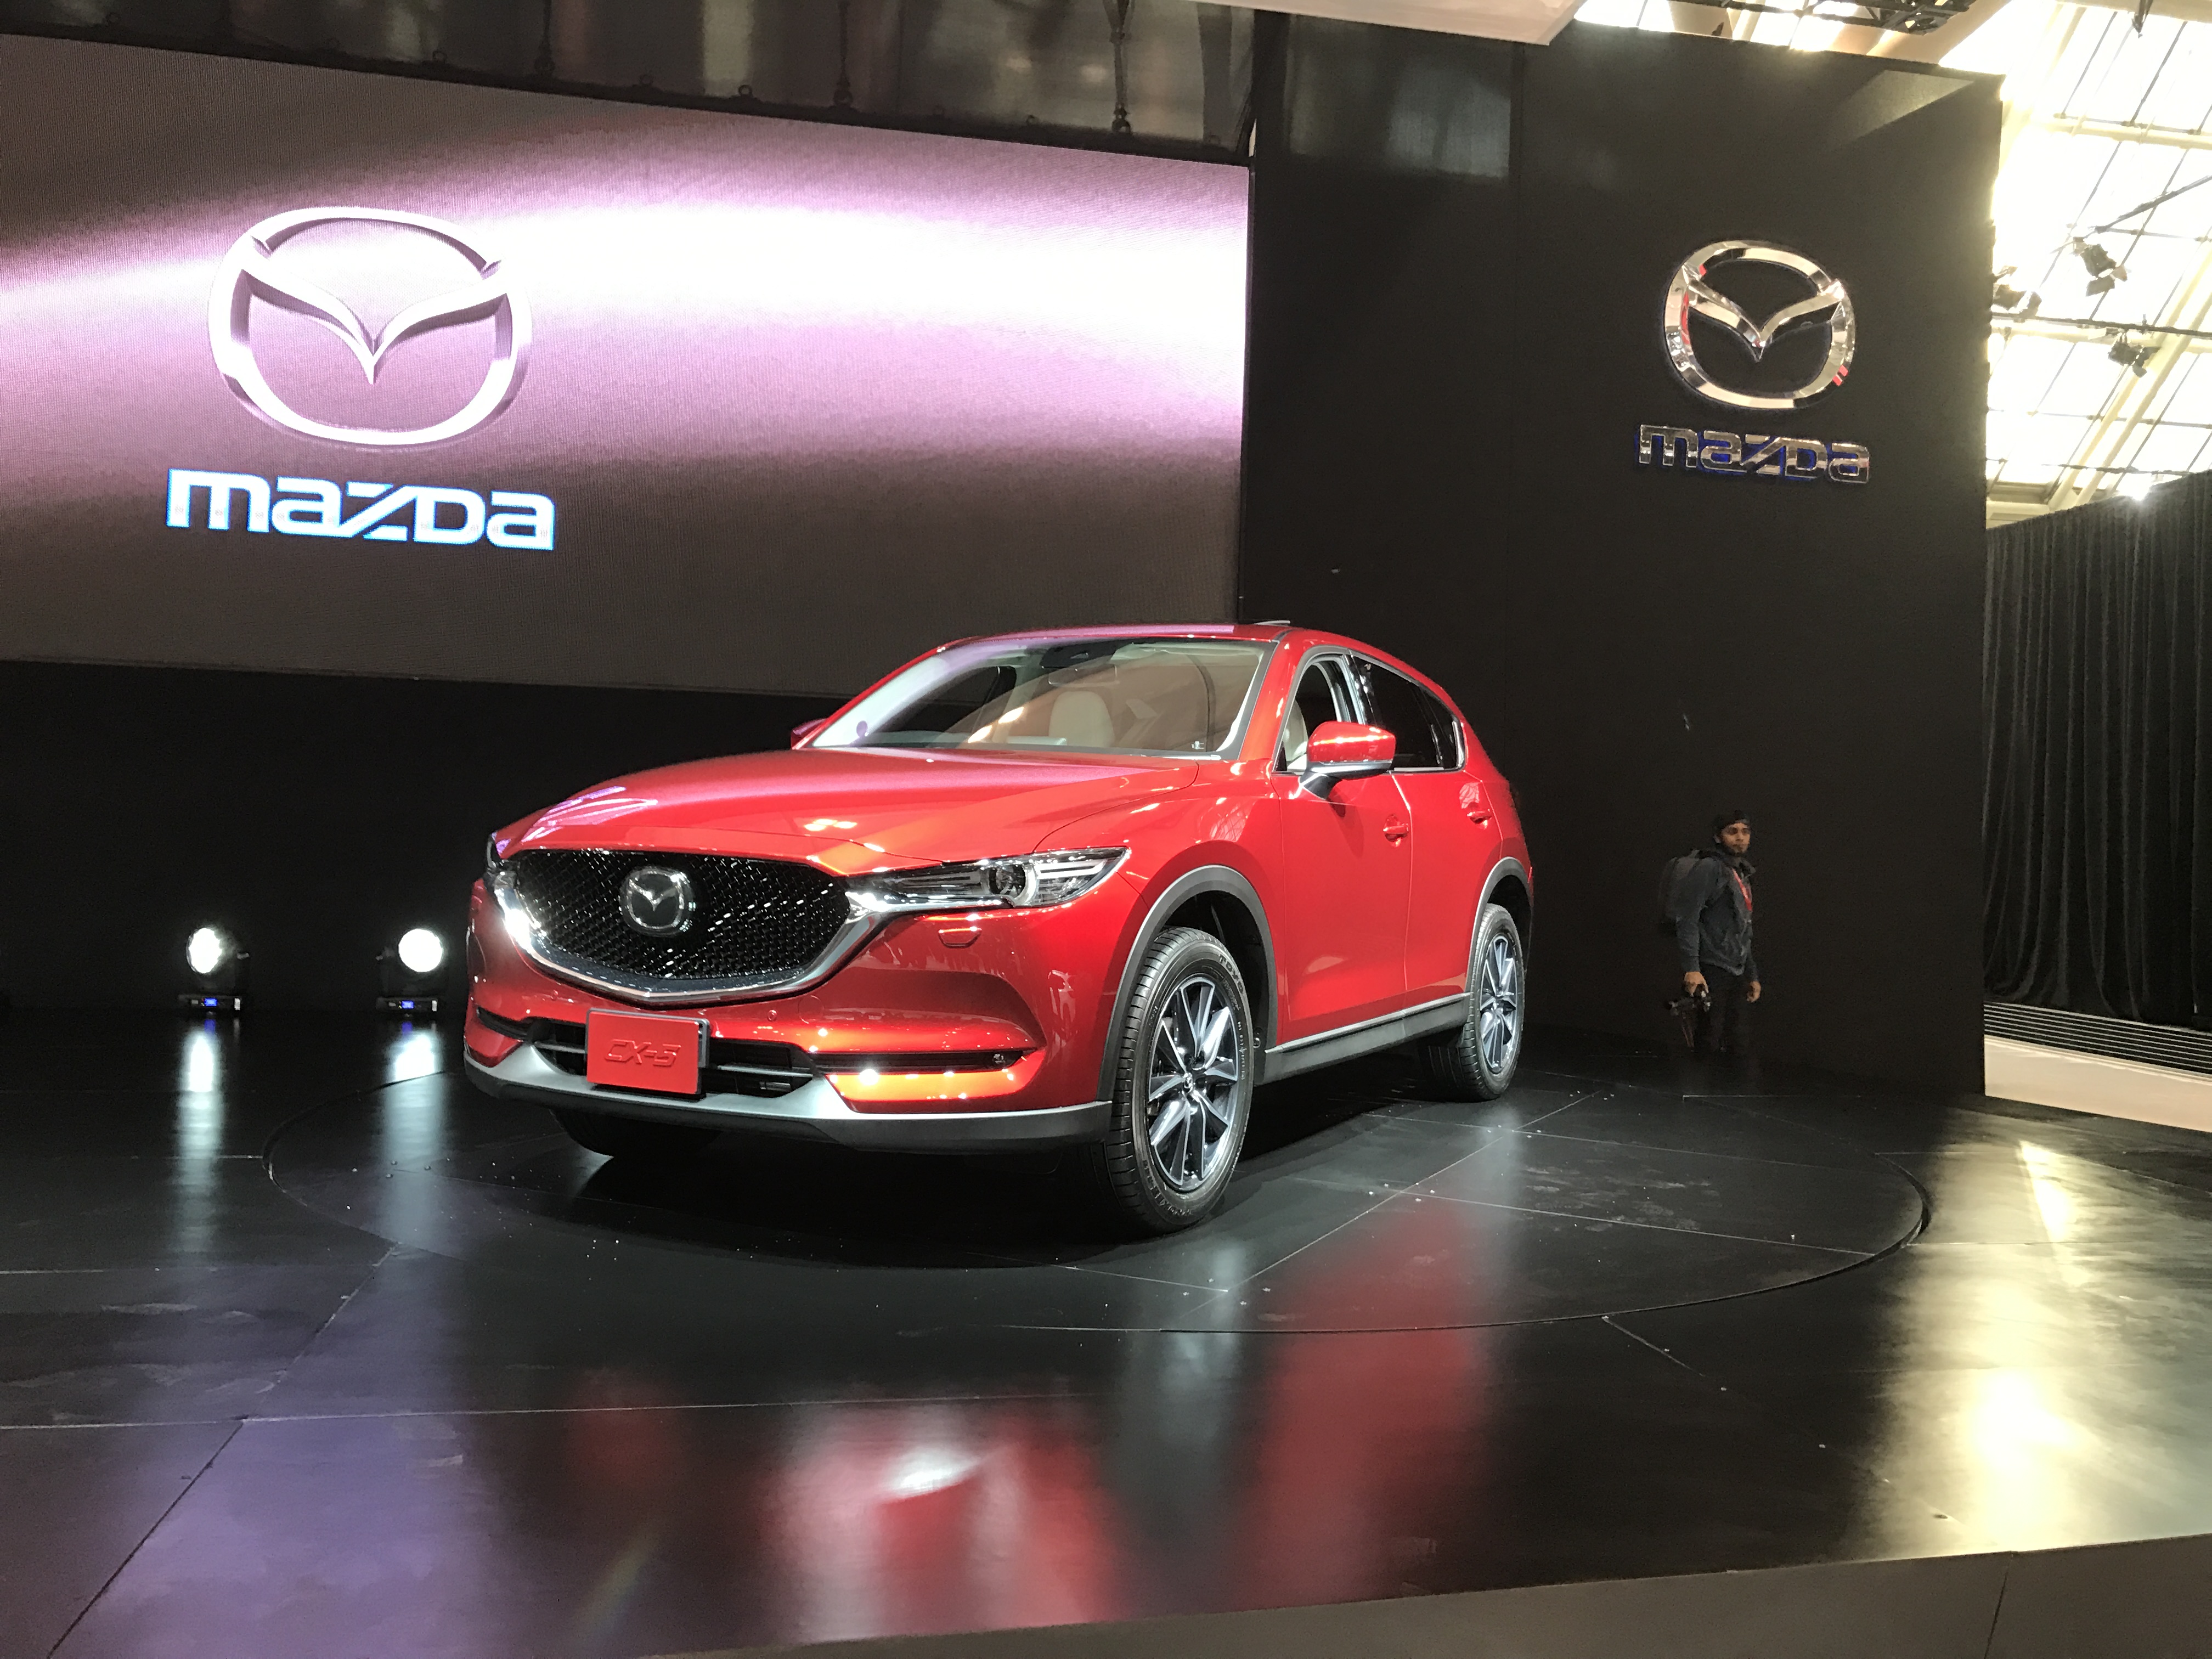 Mazda - Canadian International Autoshow #CIAS2017